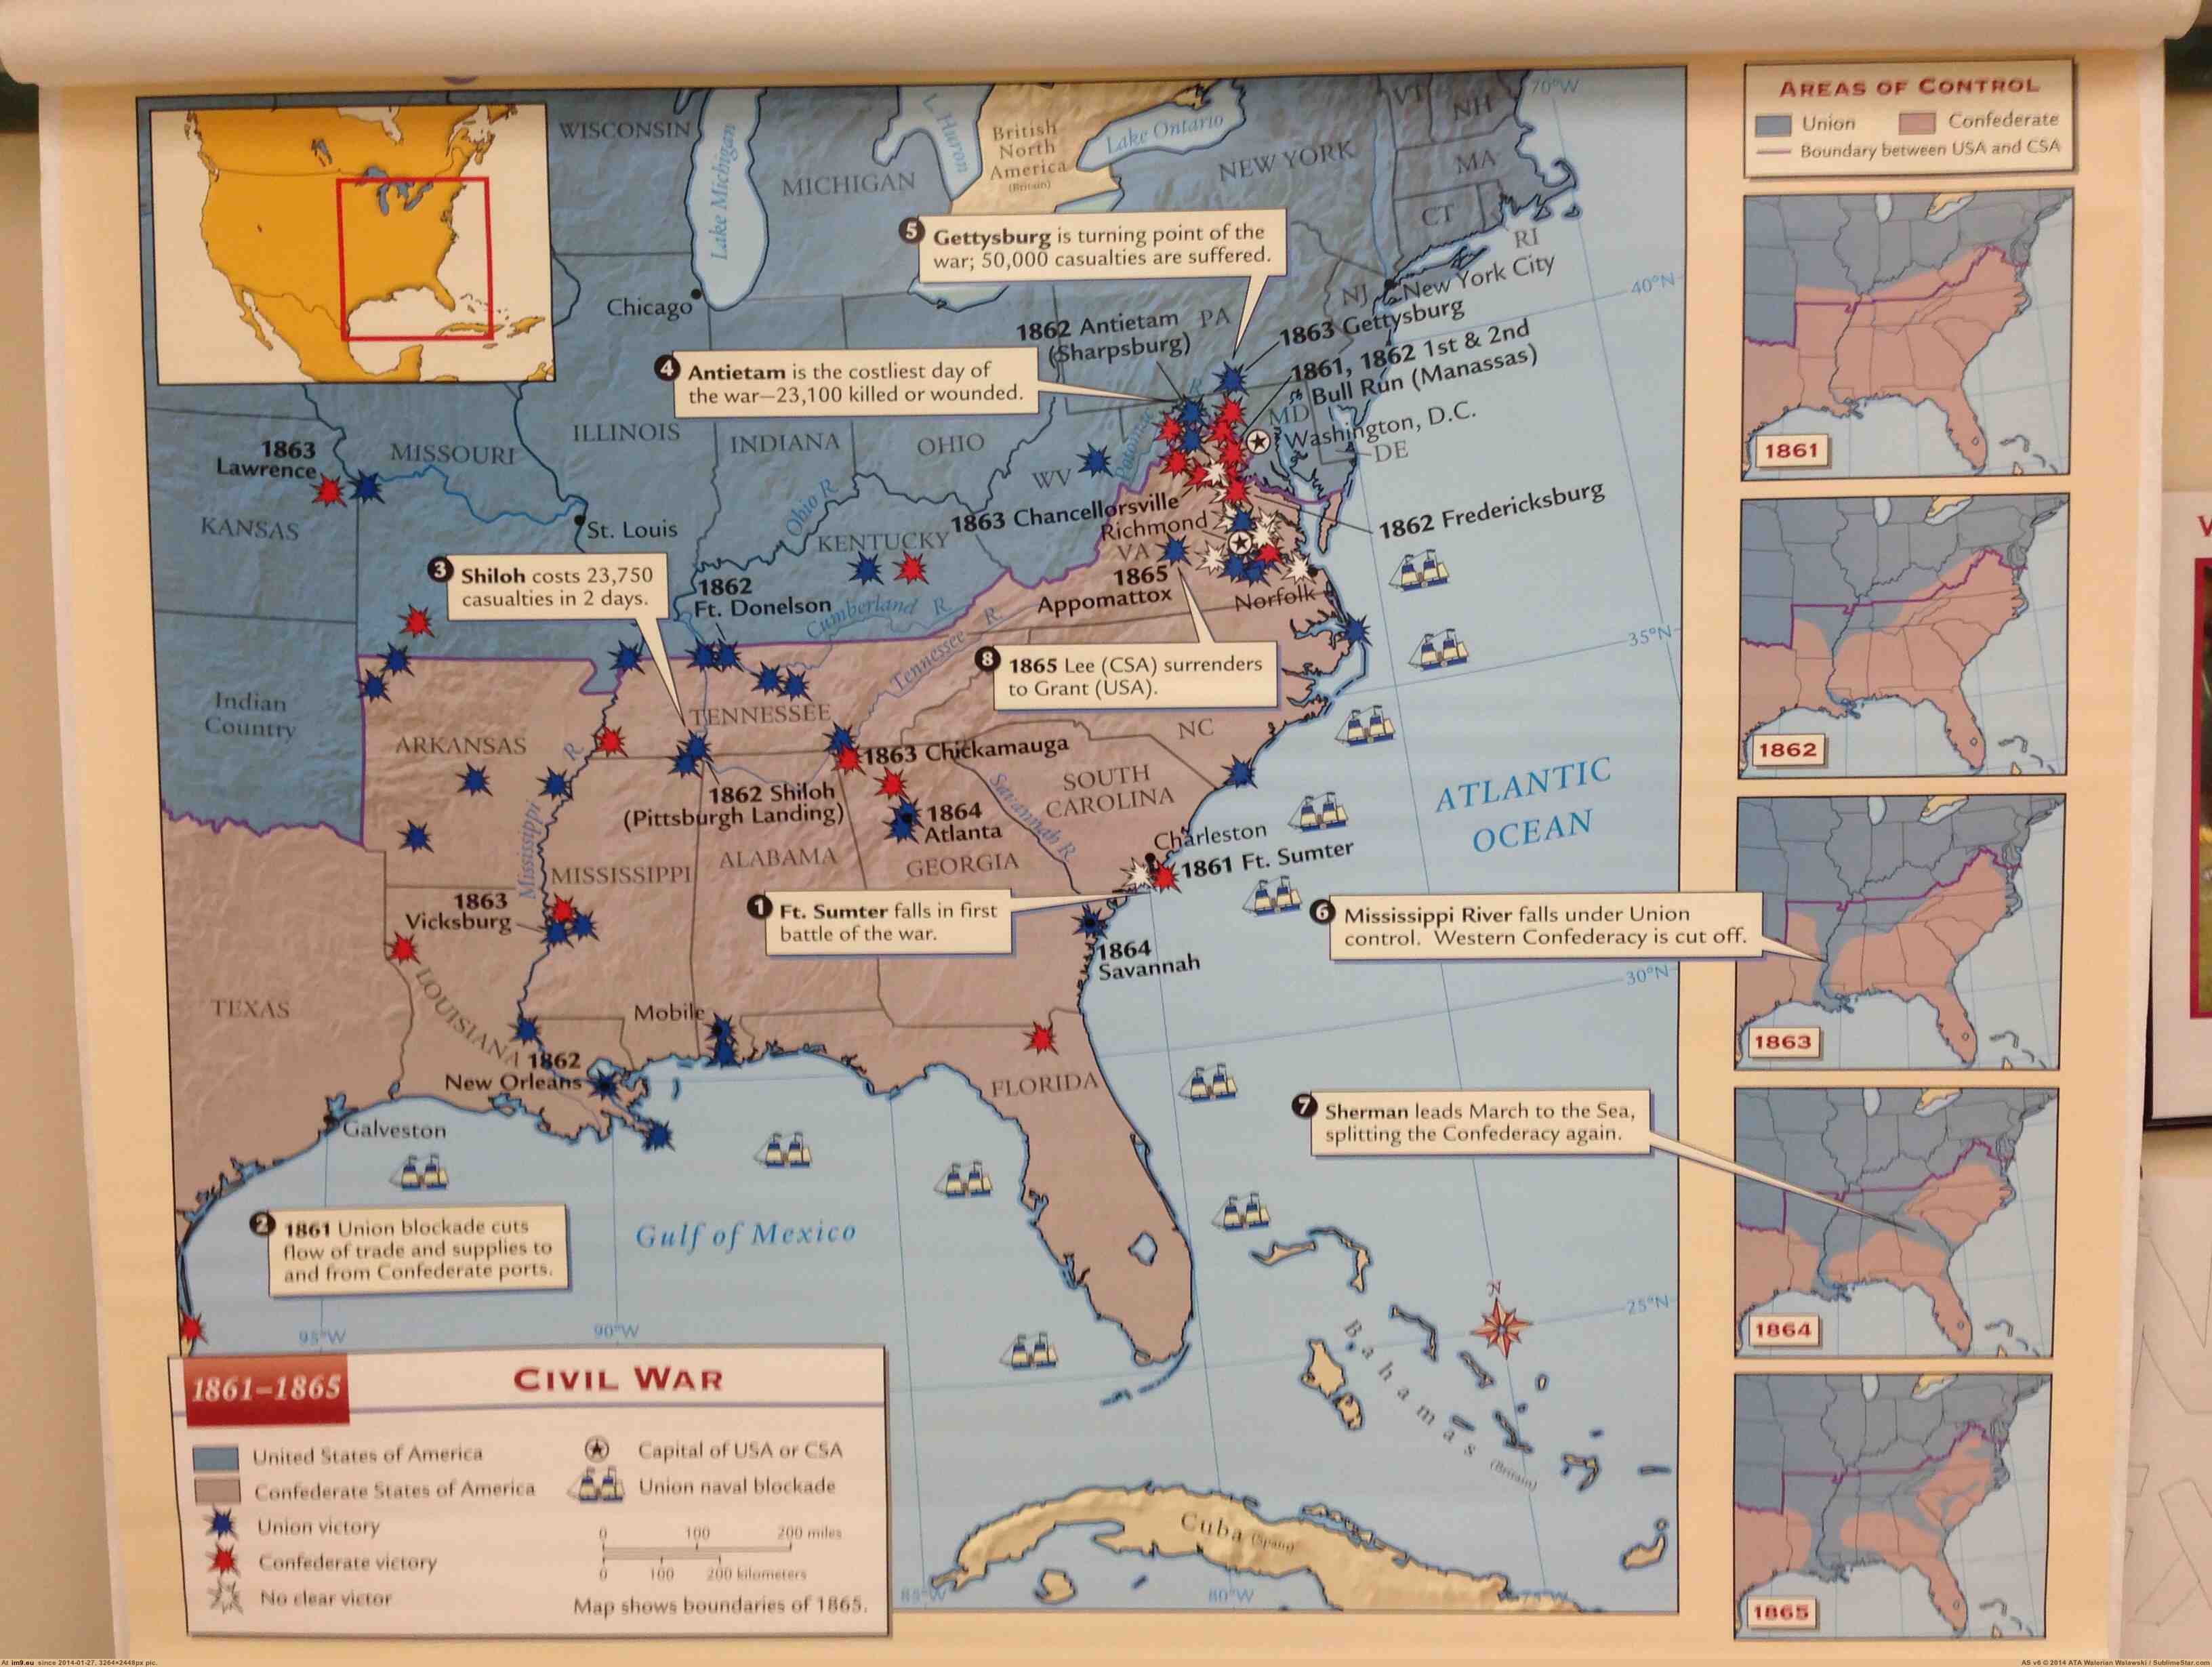 3264px x 2460px - Pic. #Map #1280x720 #Civil #American #War, 287680B â€“ My r/MAPS favs